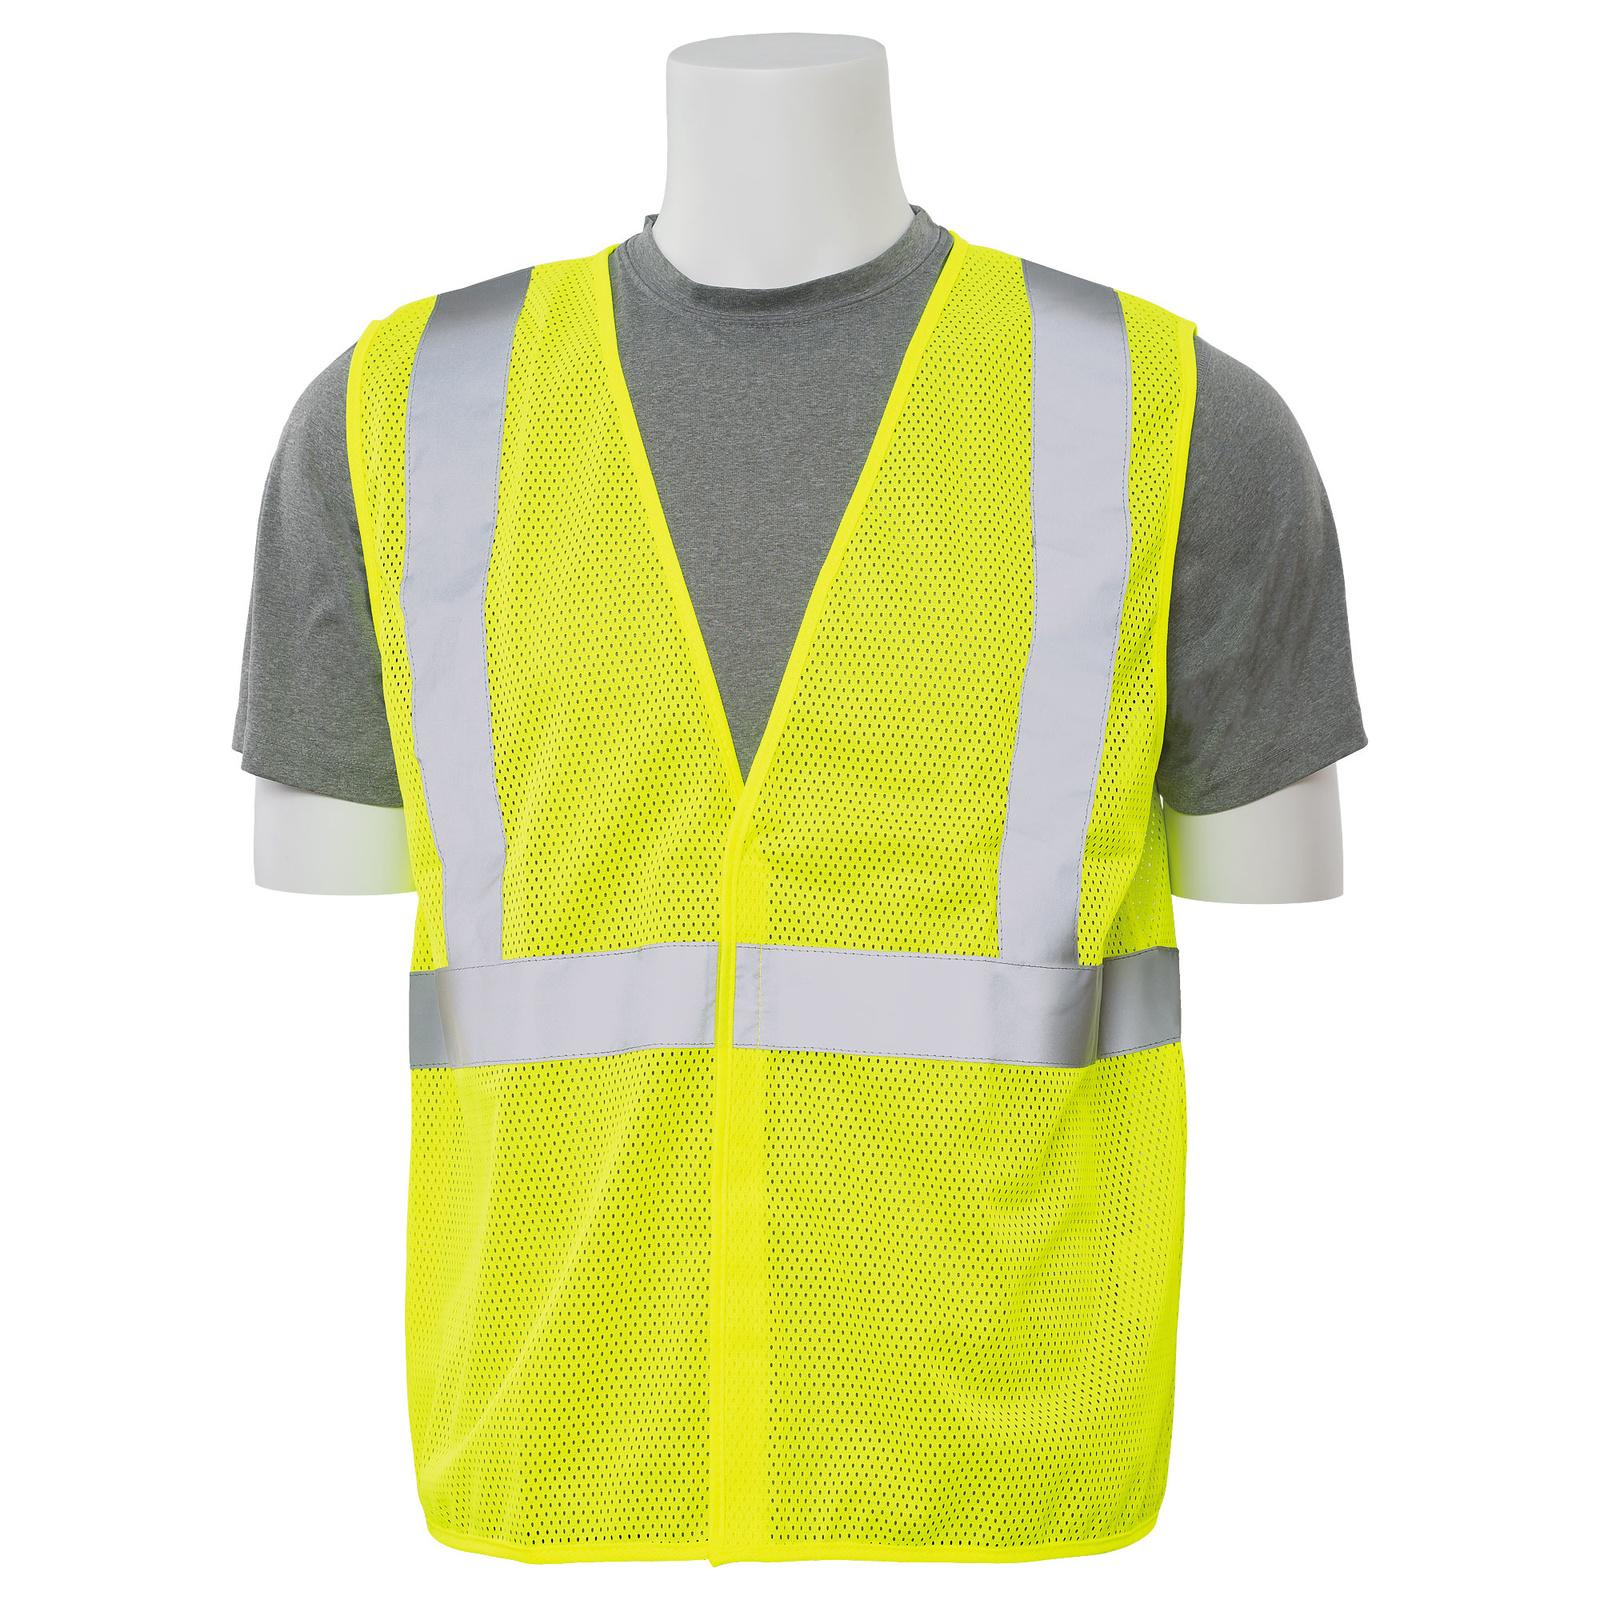 ERB S362 Safety Vest